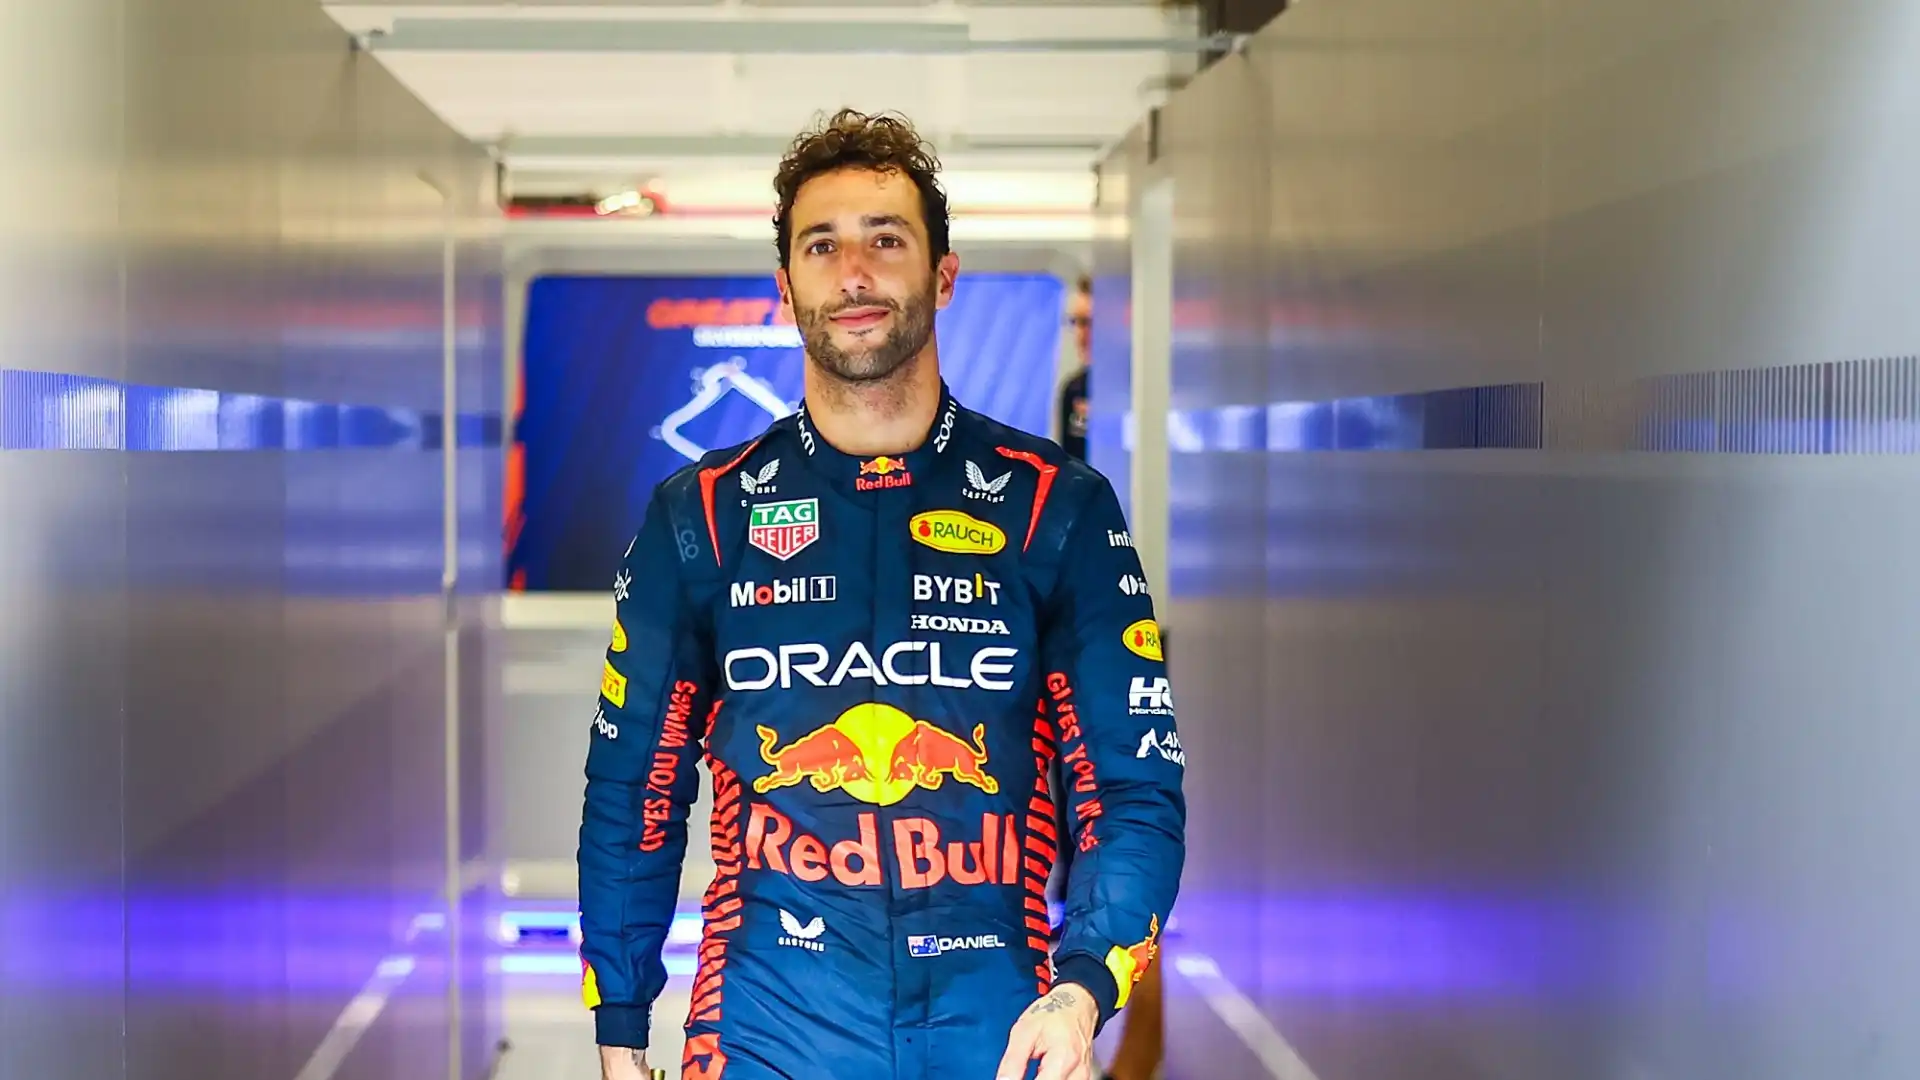 L'infortunio alla mano ha fatto scendere le possibilità per Ricciardo, tornato a correre in Alpha Tauri